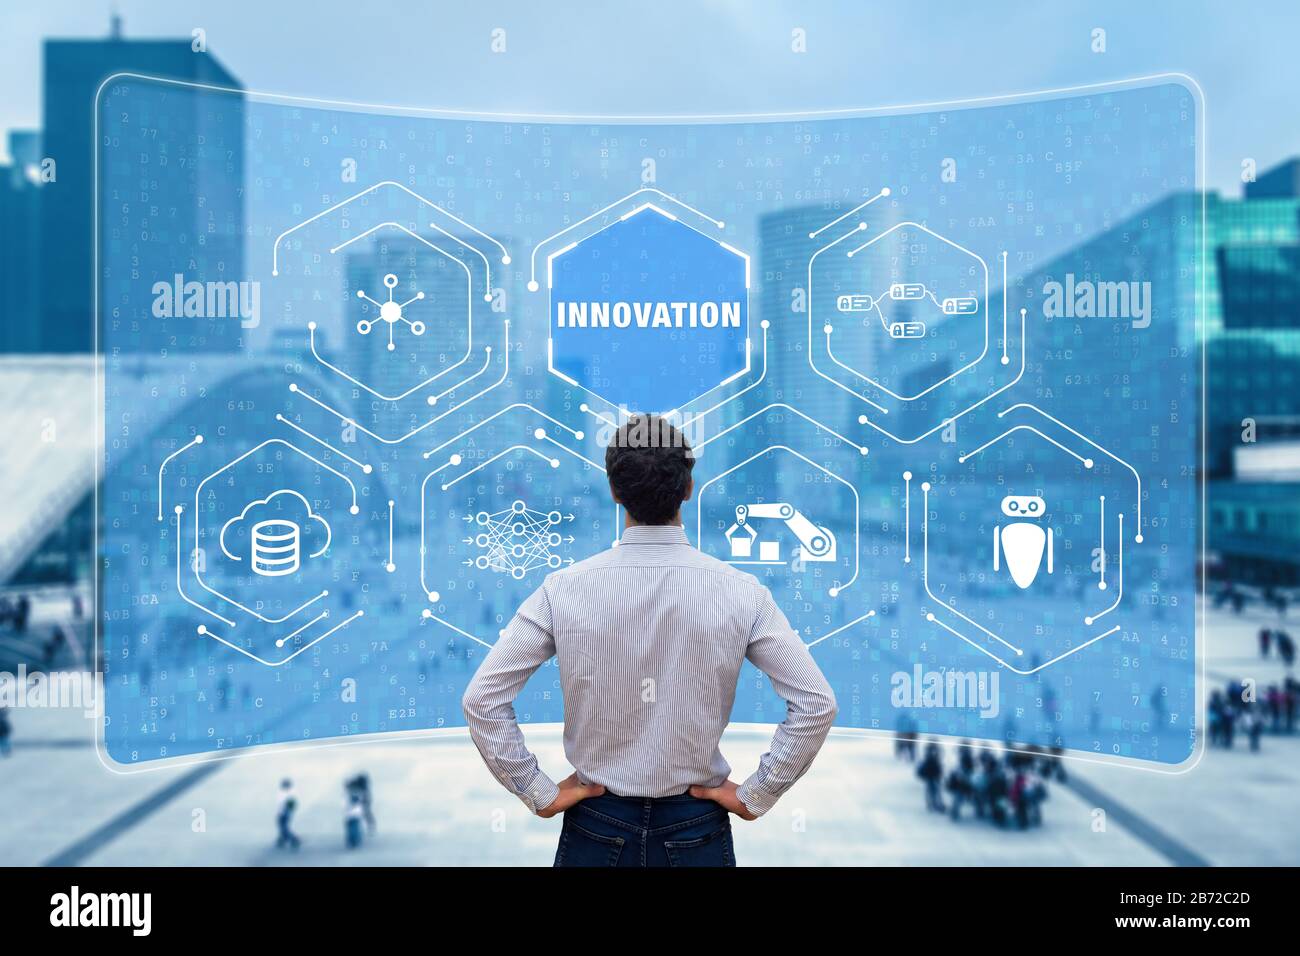 Concepto de innovación con investigadores que trabajan en tecnologías emergentes para desarrollar productos innovadores. Interrupción digital con IoT, autom de proceso robótico Foto de stock